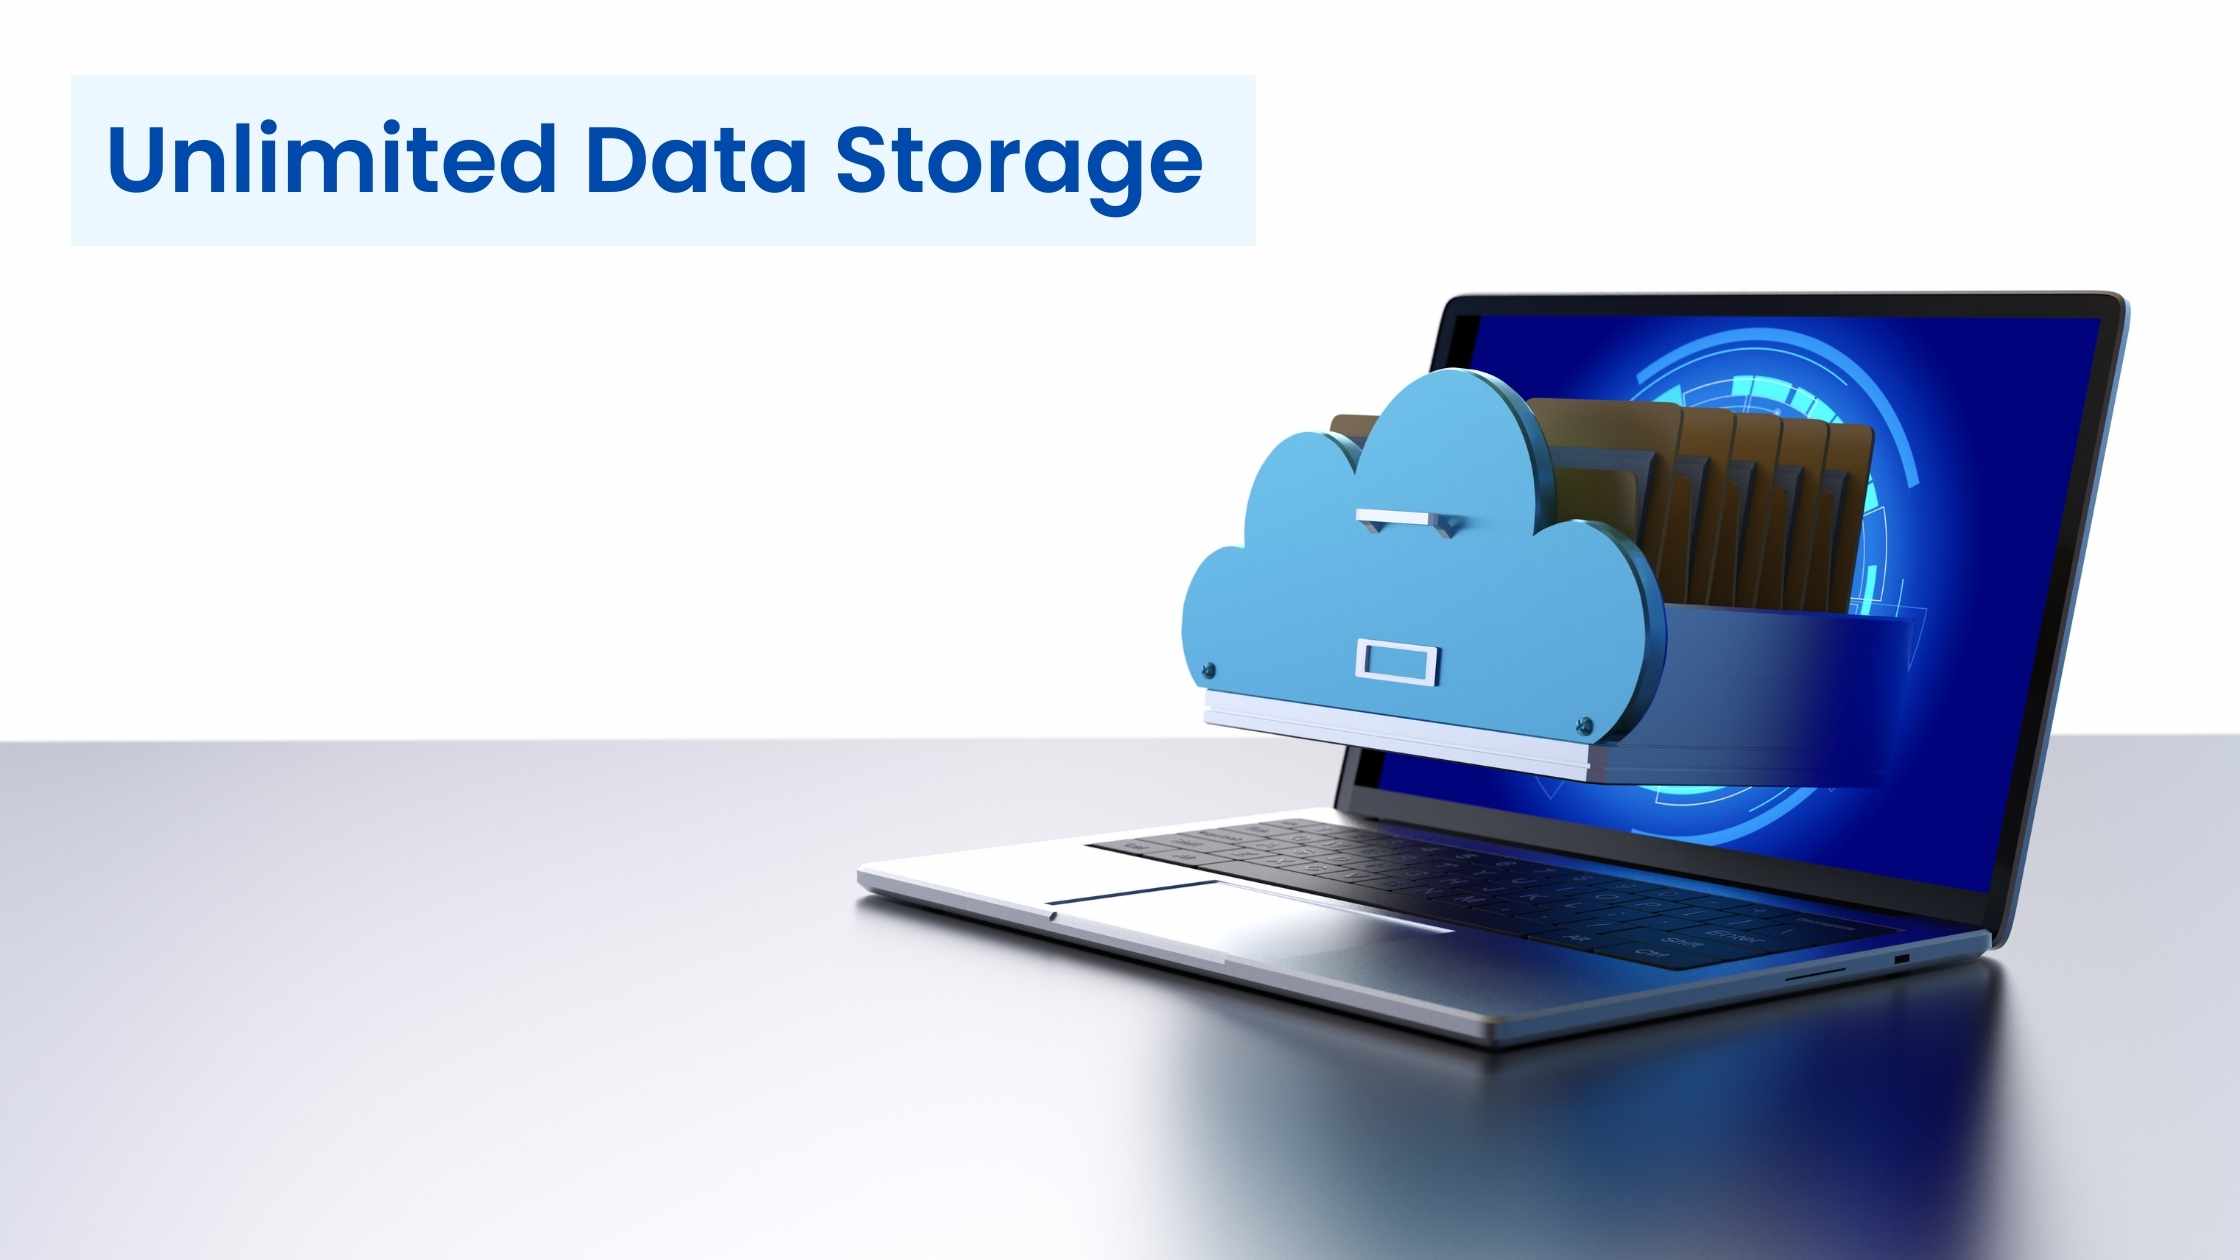 Unlimited data storage